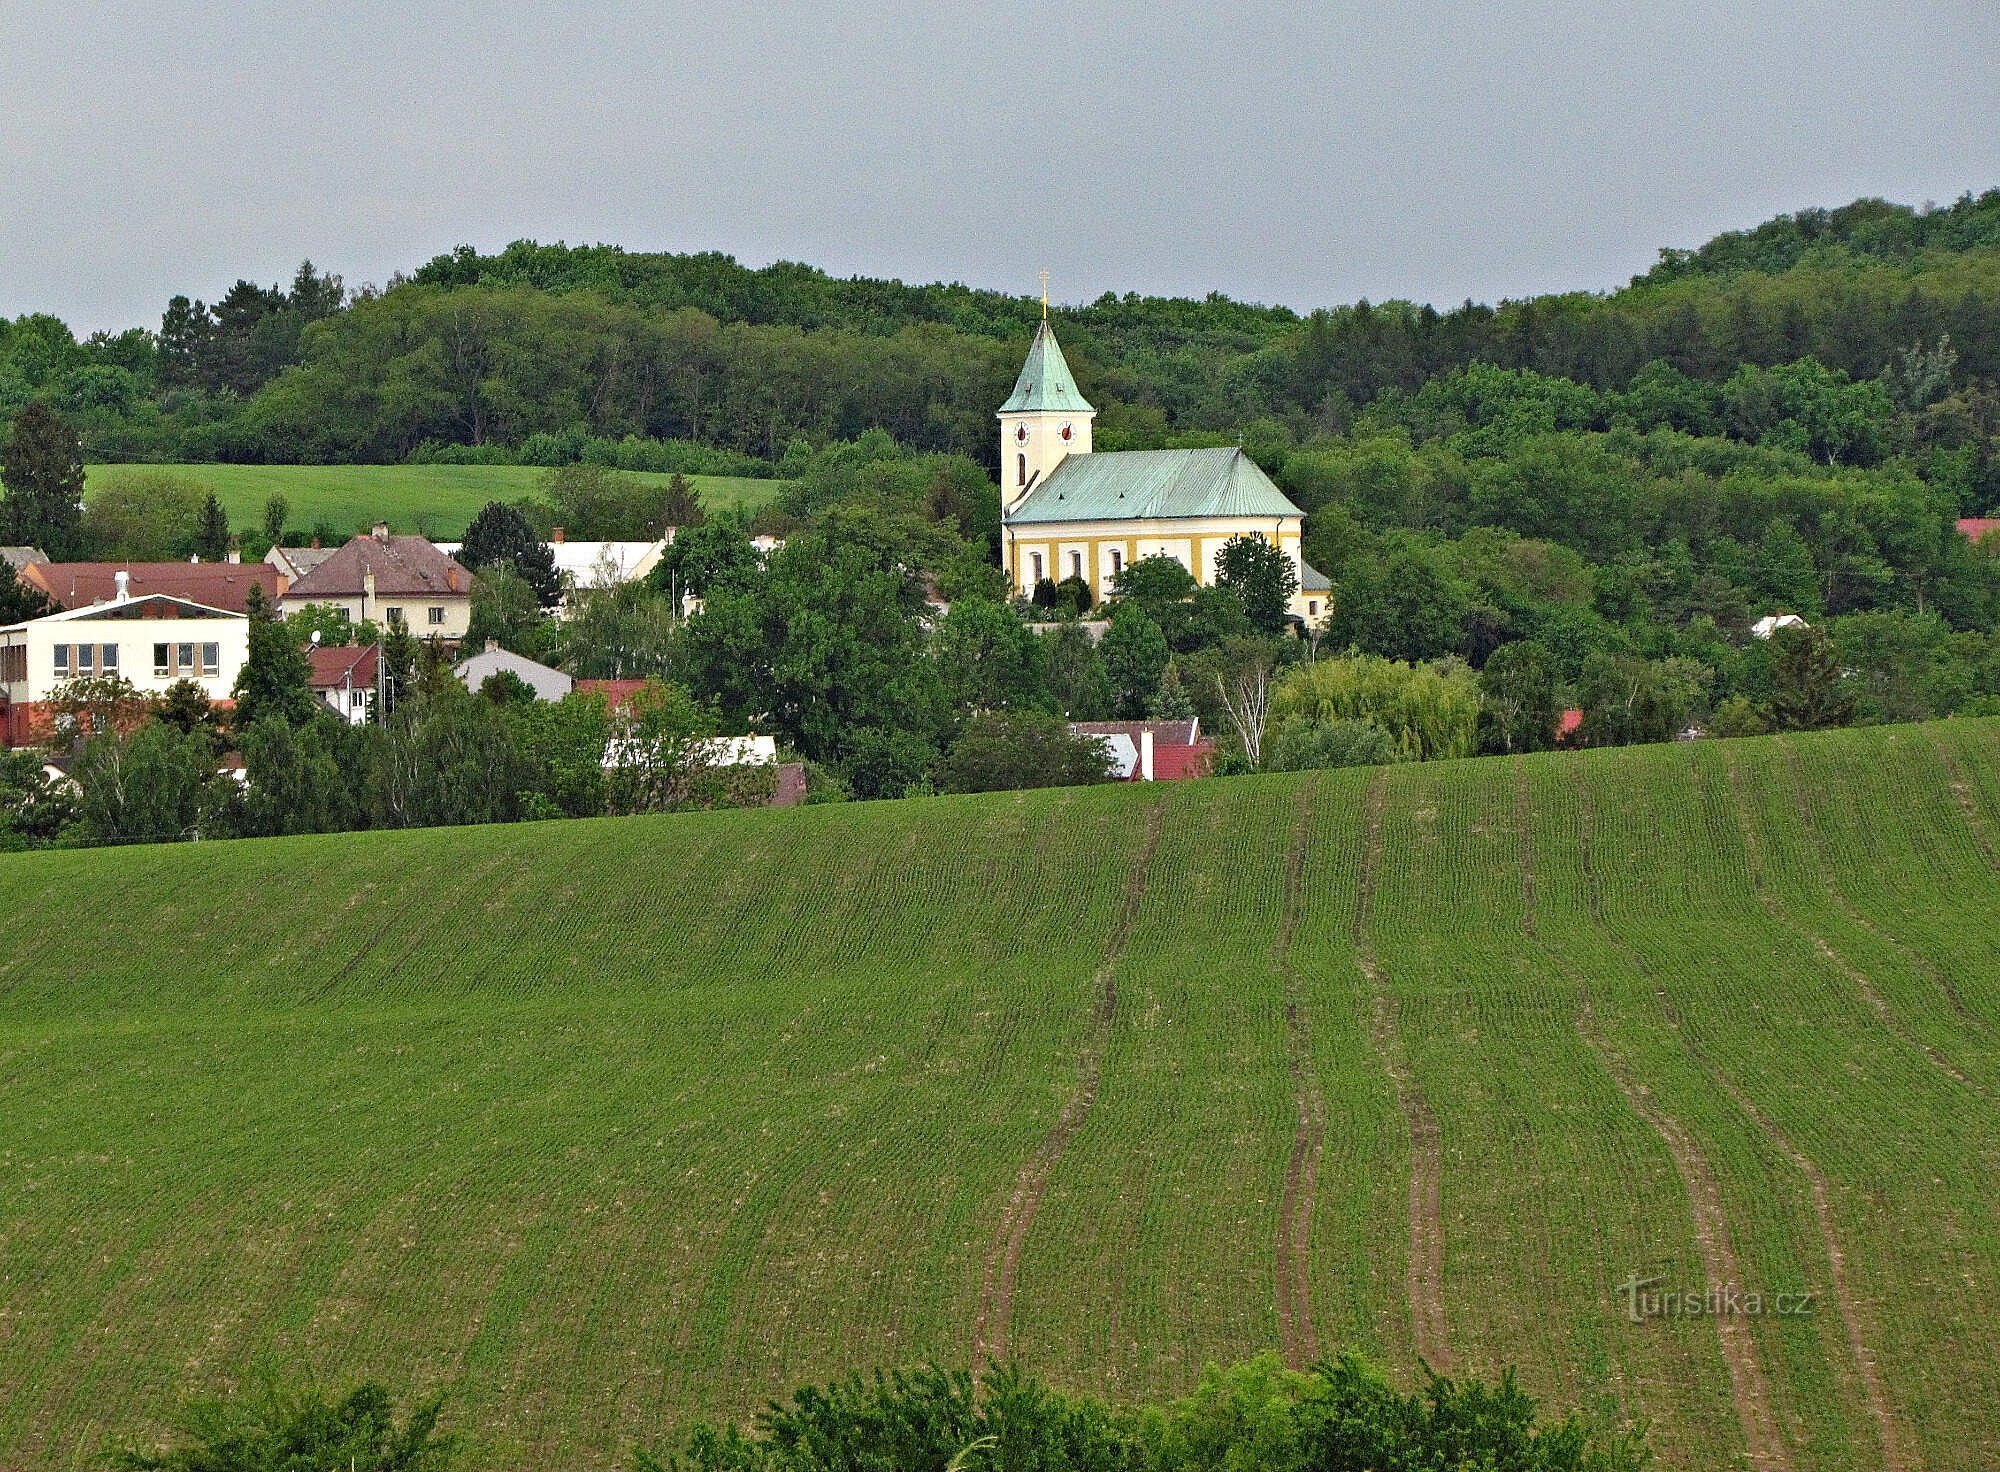 Kostelec gần Holešov - nhà thờ thánh Peter và Paul